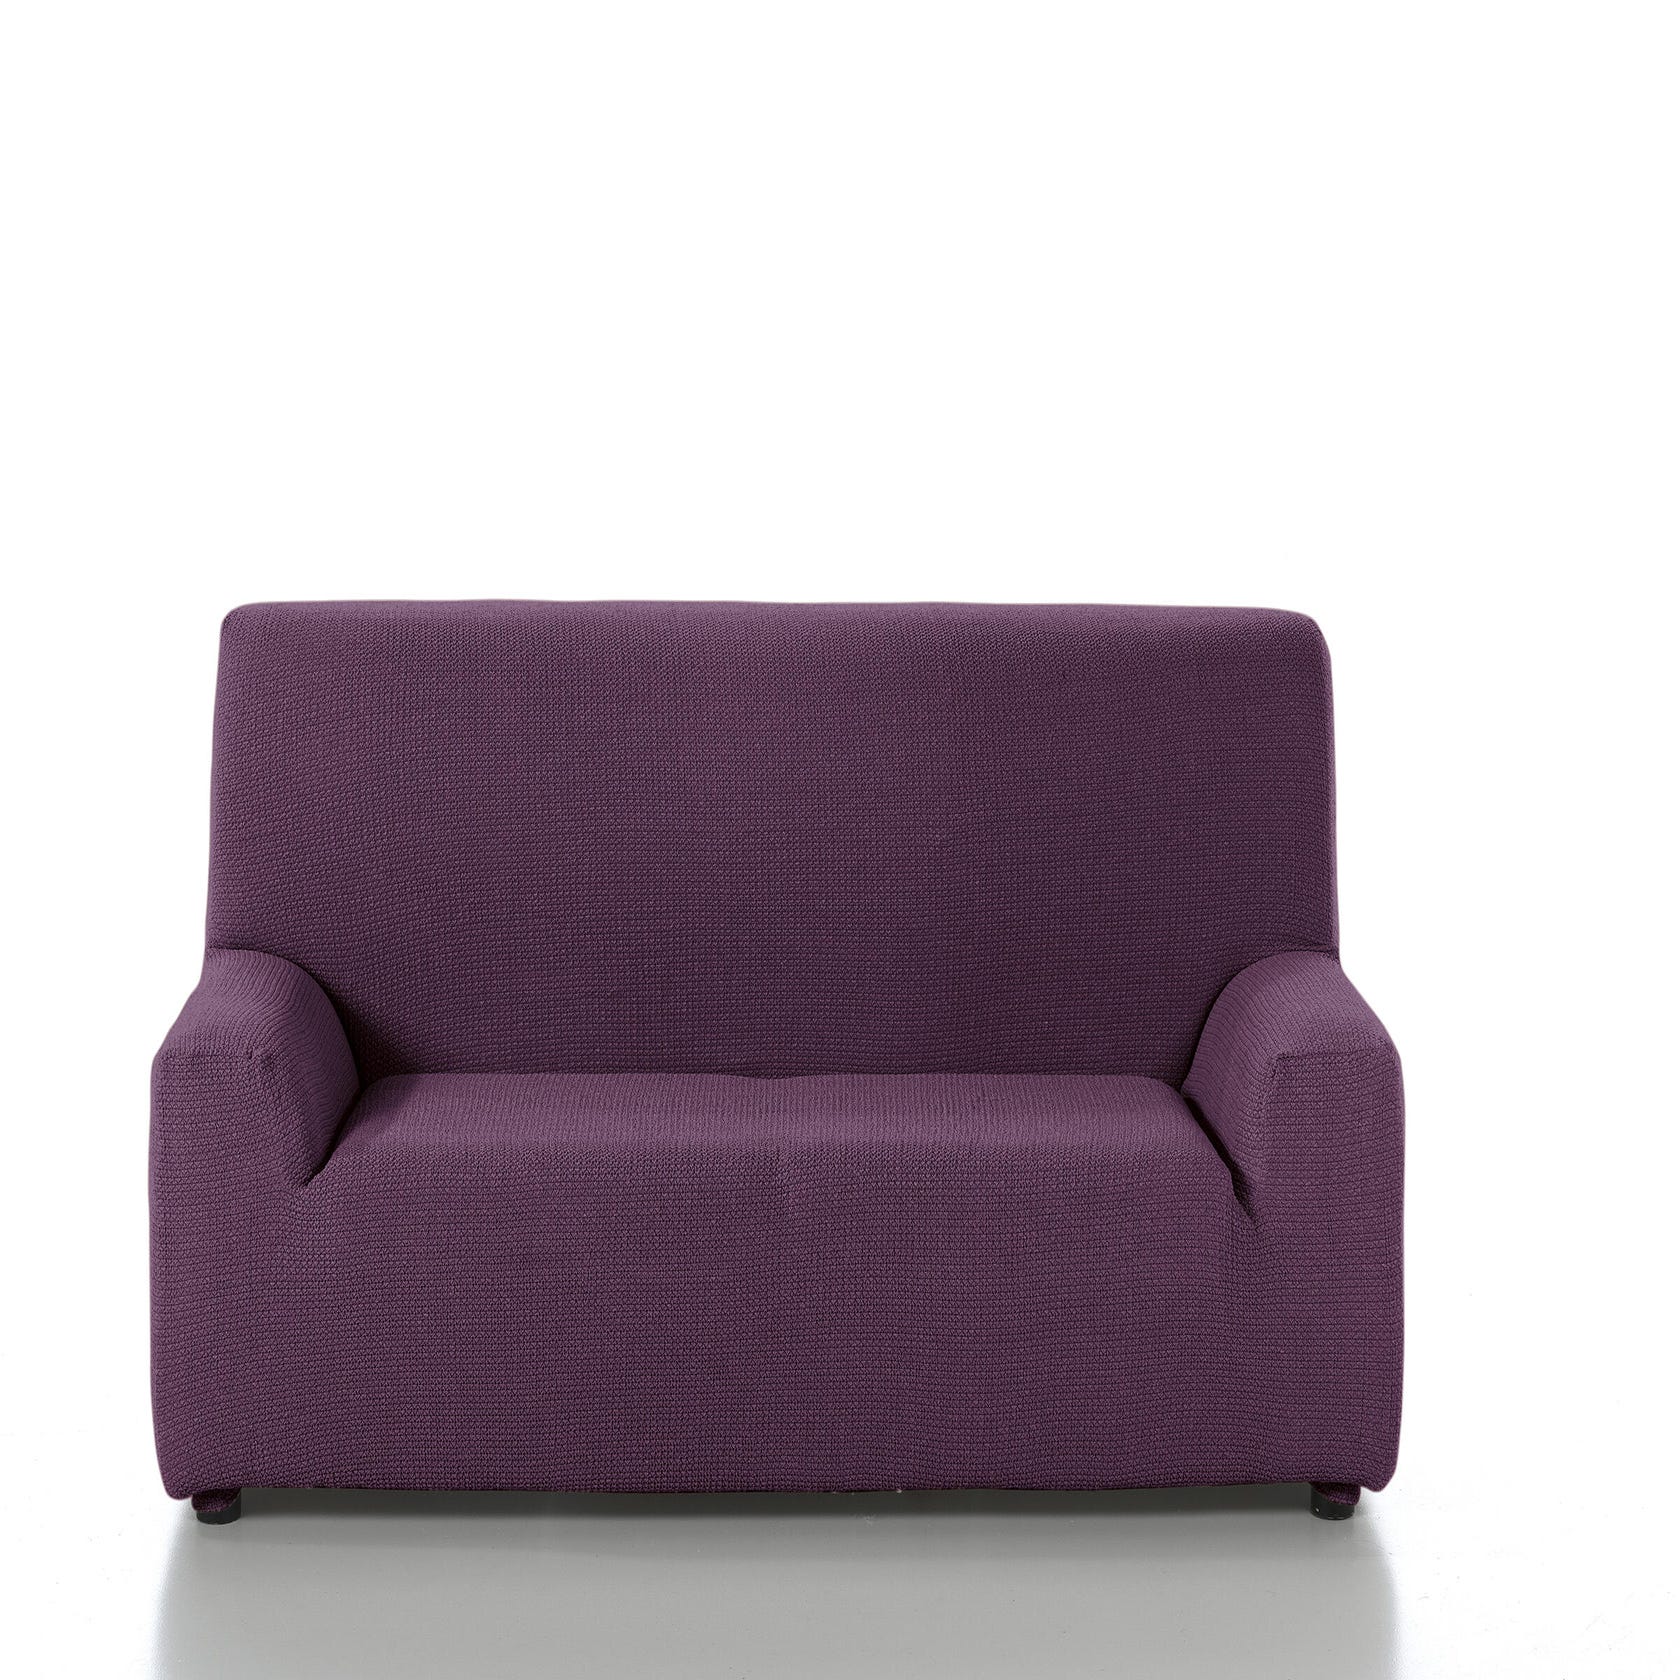 Las mejores ofertas en Sofá de 3 plazas púrpura Fundas para Muebles